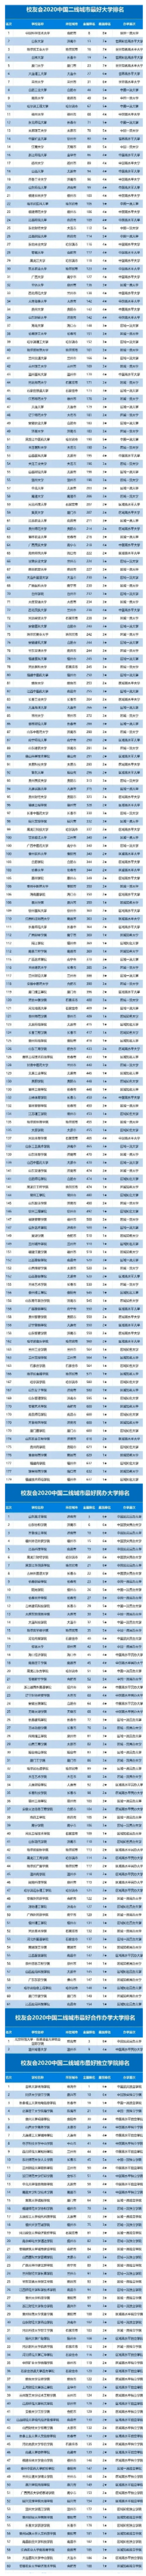 2020私立大学排名_2020中国民办大学竞争力排名:100所高校上榜